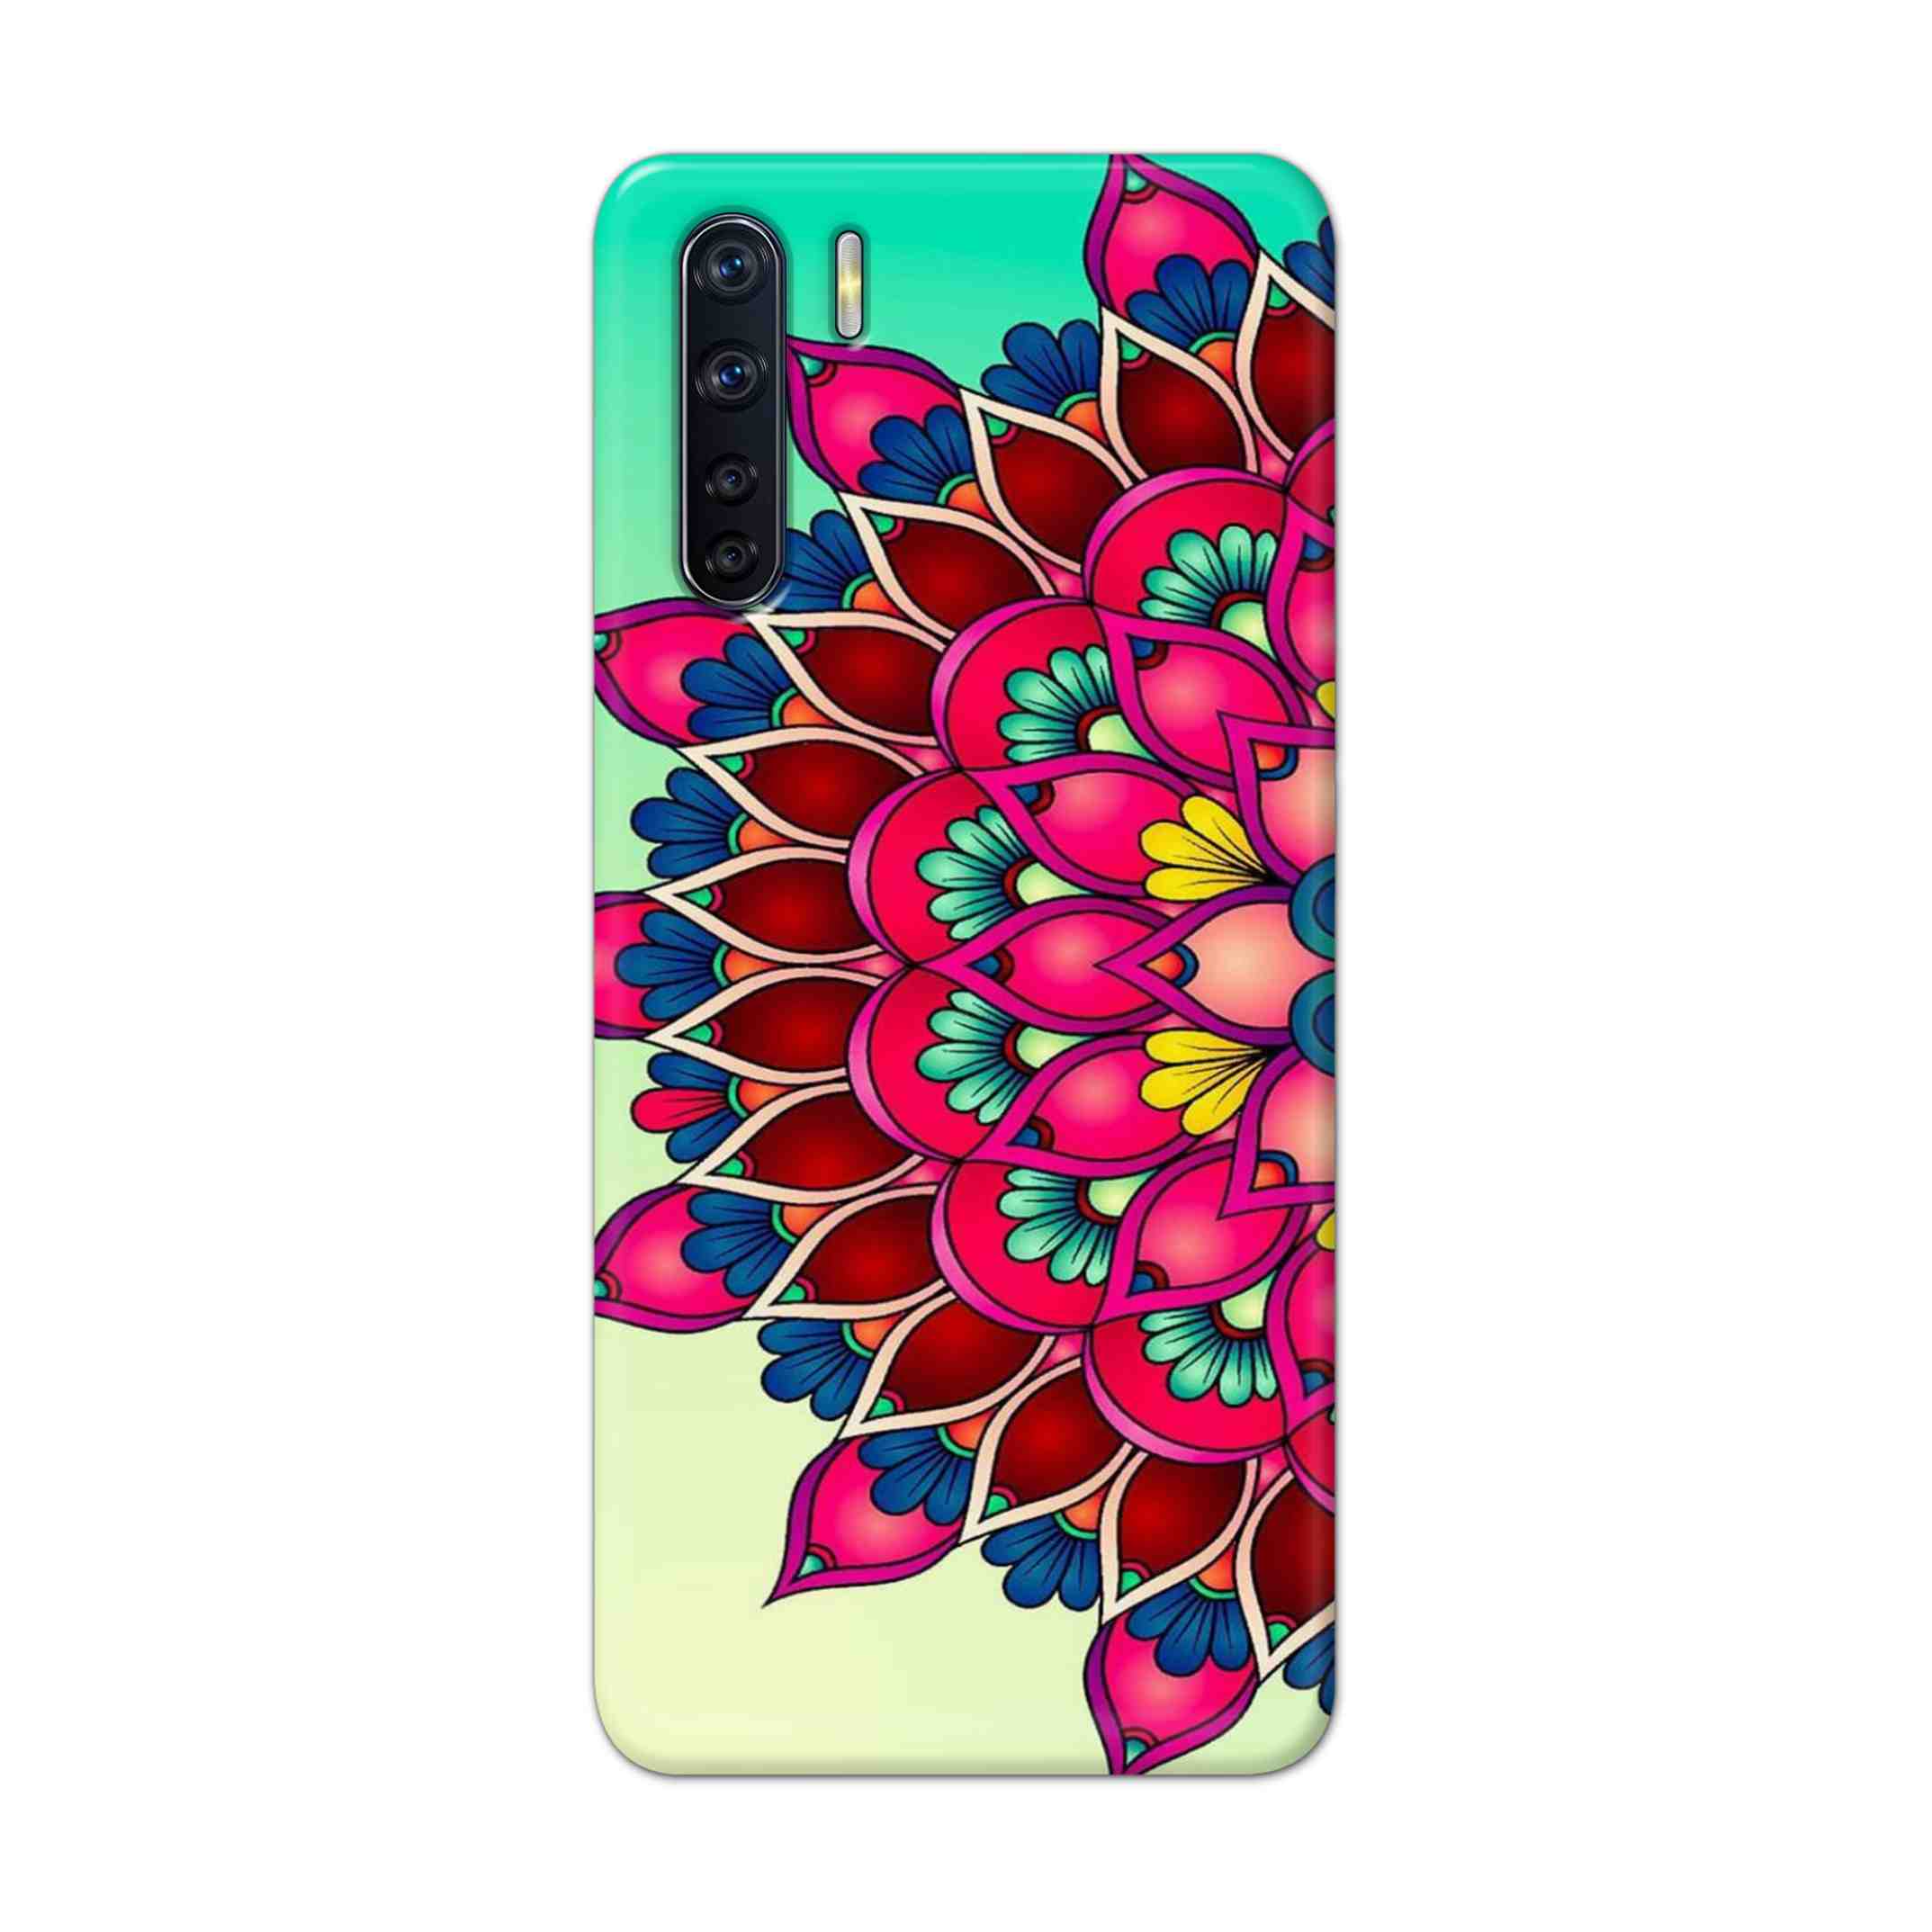 Buy Lotus Mandala Hard Back Mobile Phone Case Cover For OPPO F15 Online